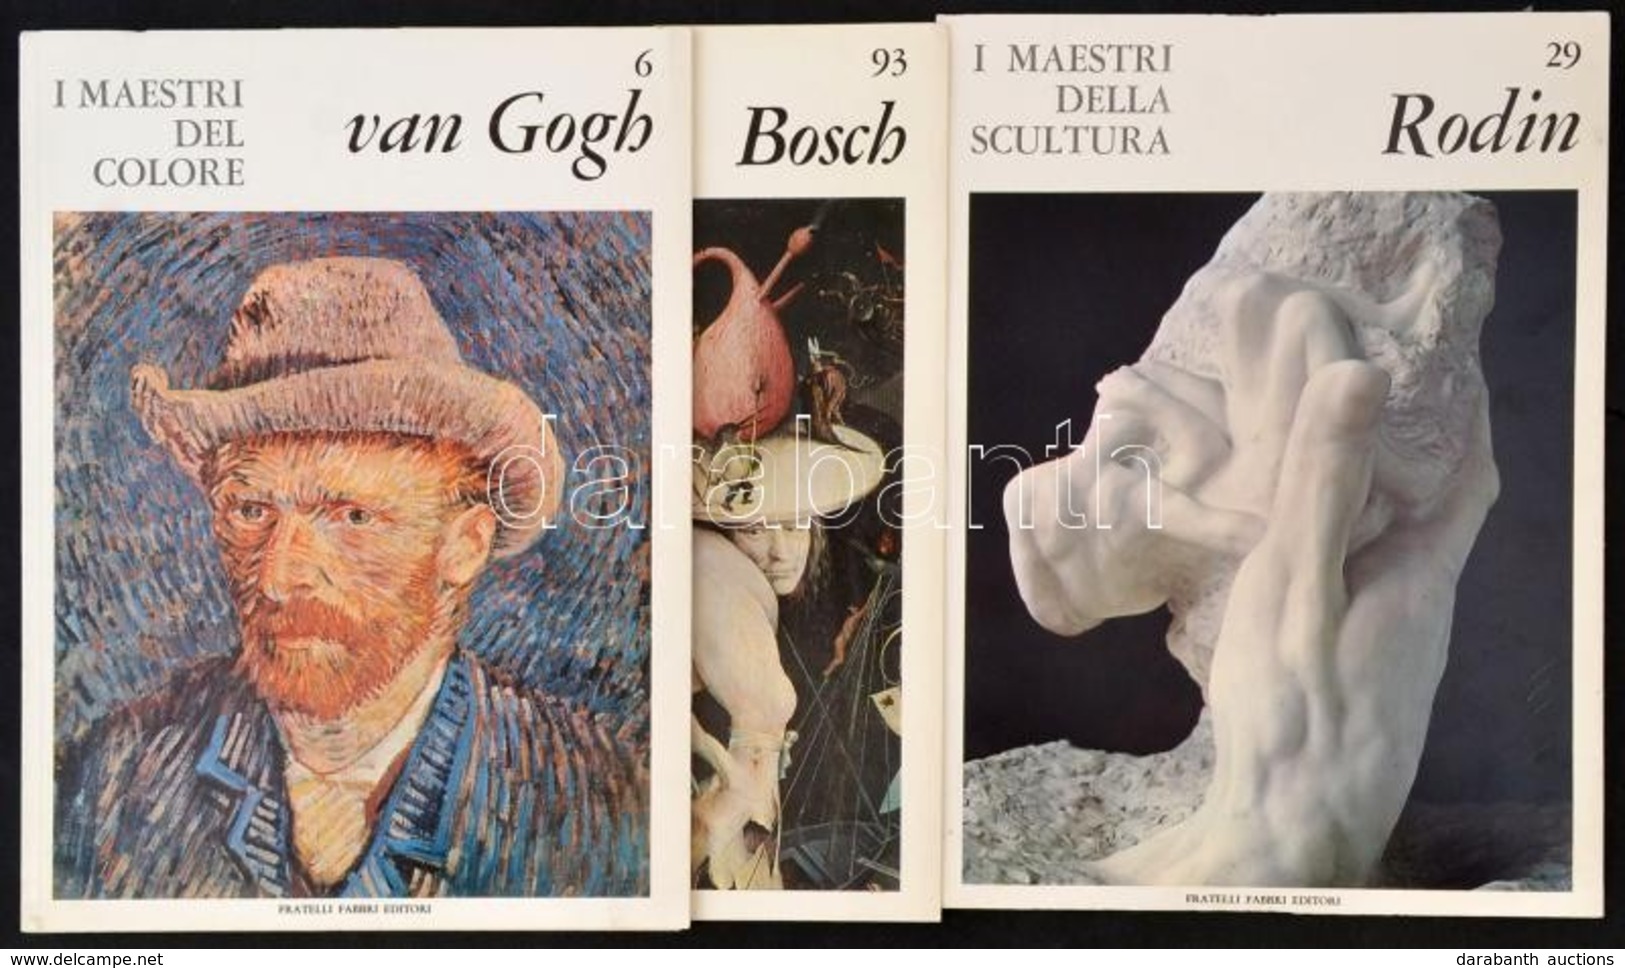 3 Db Művészeti Képes Lapozó: Rodin, Van Gogh, Hyeronimus Bosch, Olasz Nyelvű Bevezetővel. Kiadói Papírkötés, Jó állapotb - Ohne Zuordnung